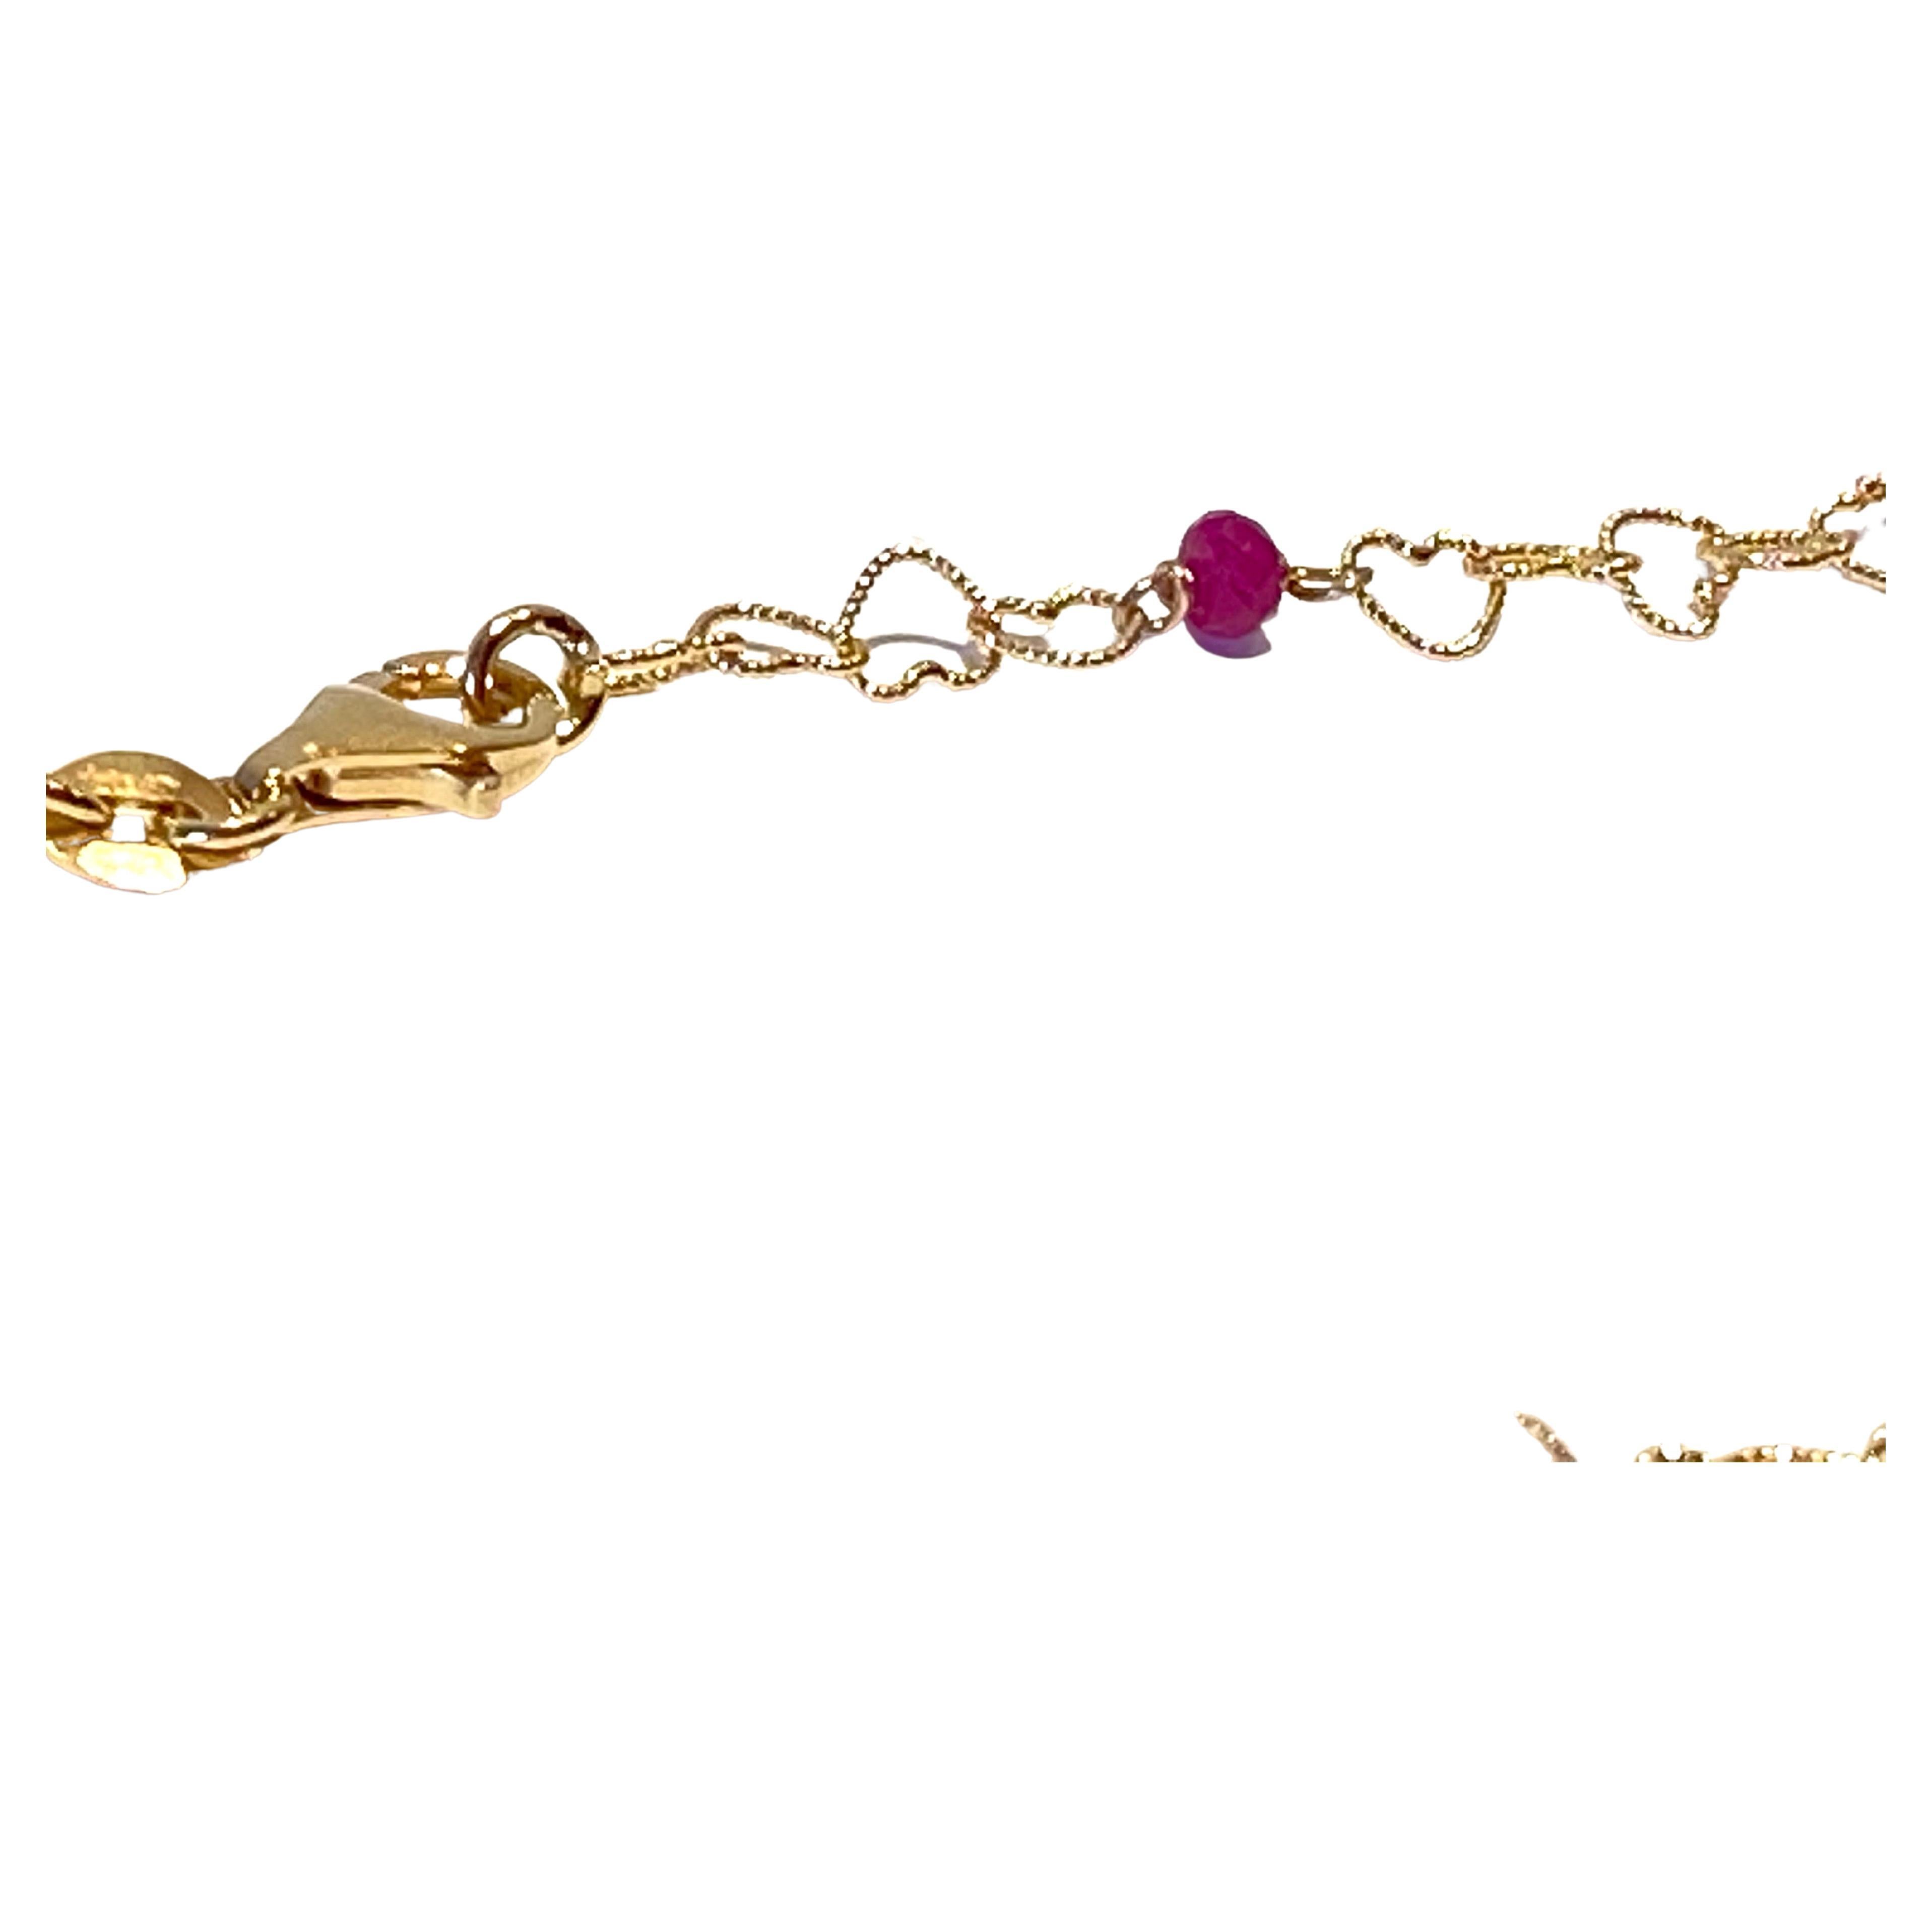 Halskette "Little Hearts" aus 18 Karat Gelbgold mit leicht gehämmertem rotem Rubin